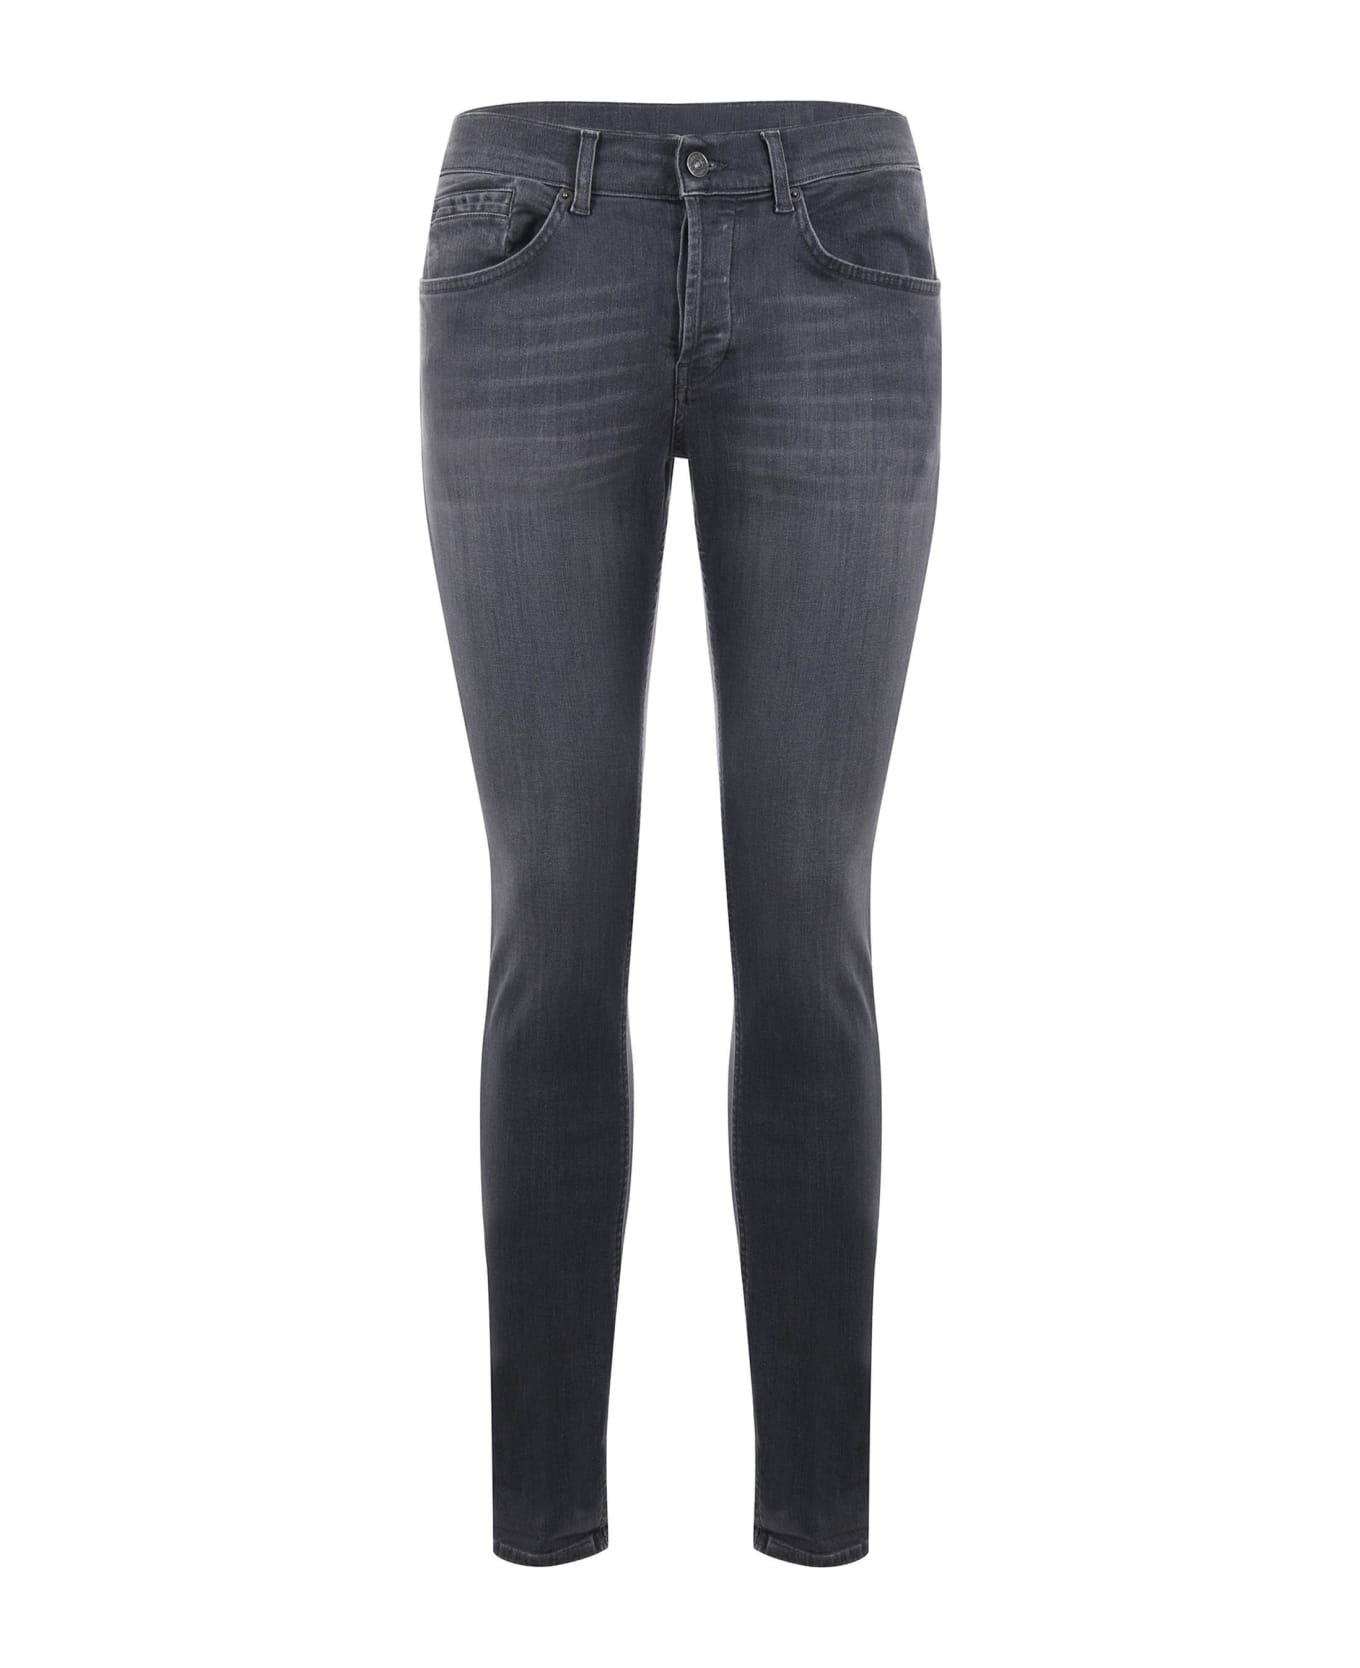 Dondup Pantalone George 5 Tasche Jeans - Denim grigio デニム